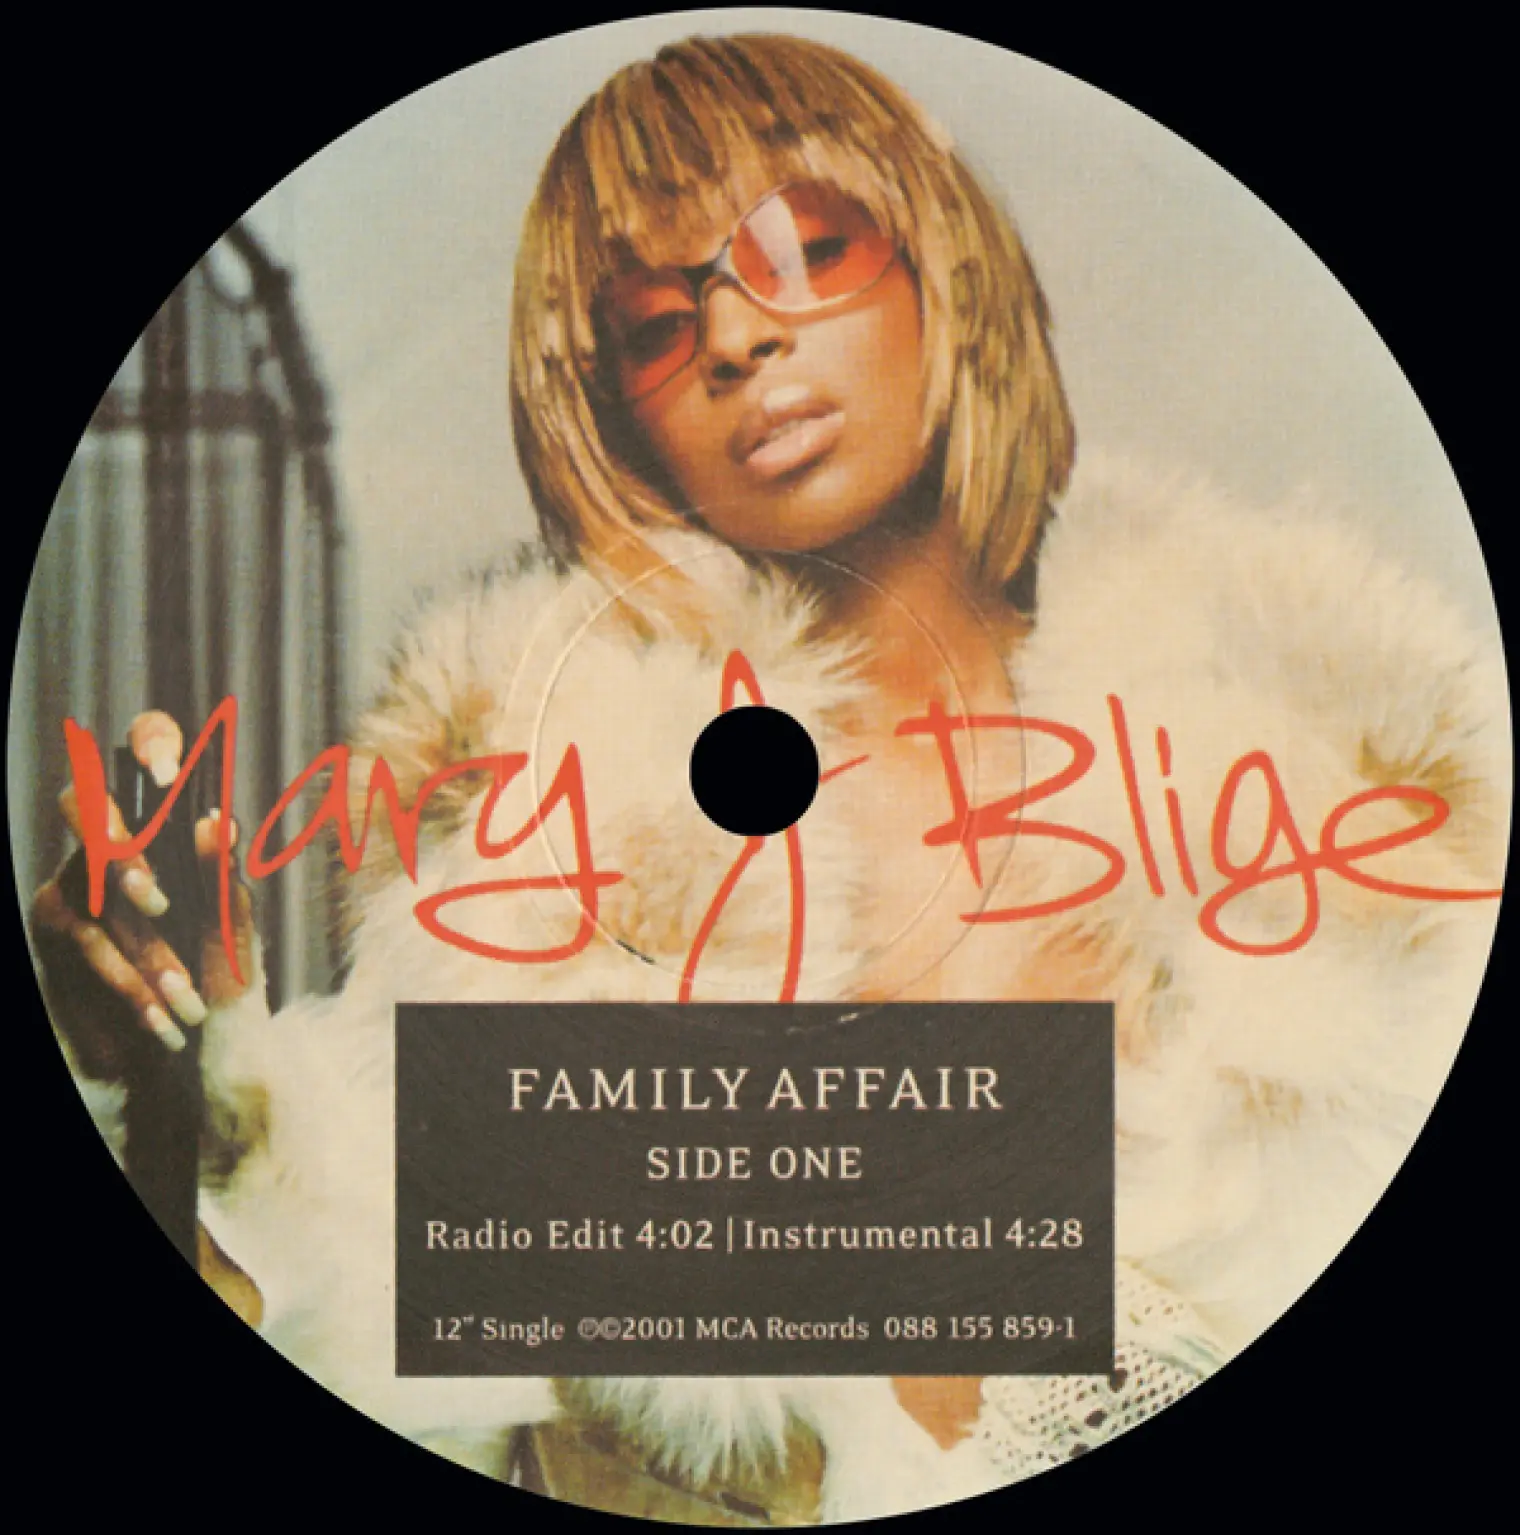 Family Affair -  Mary J. Blige 